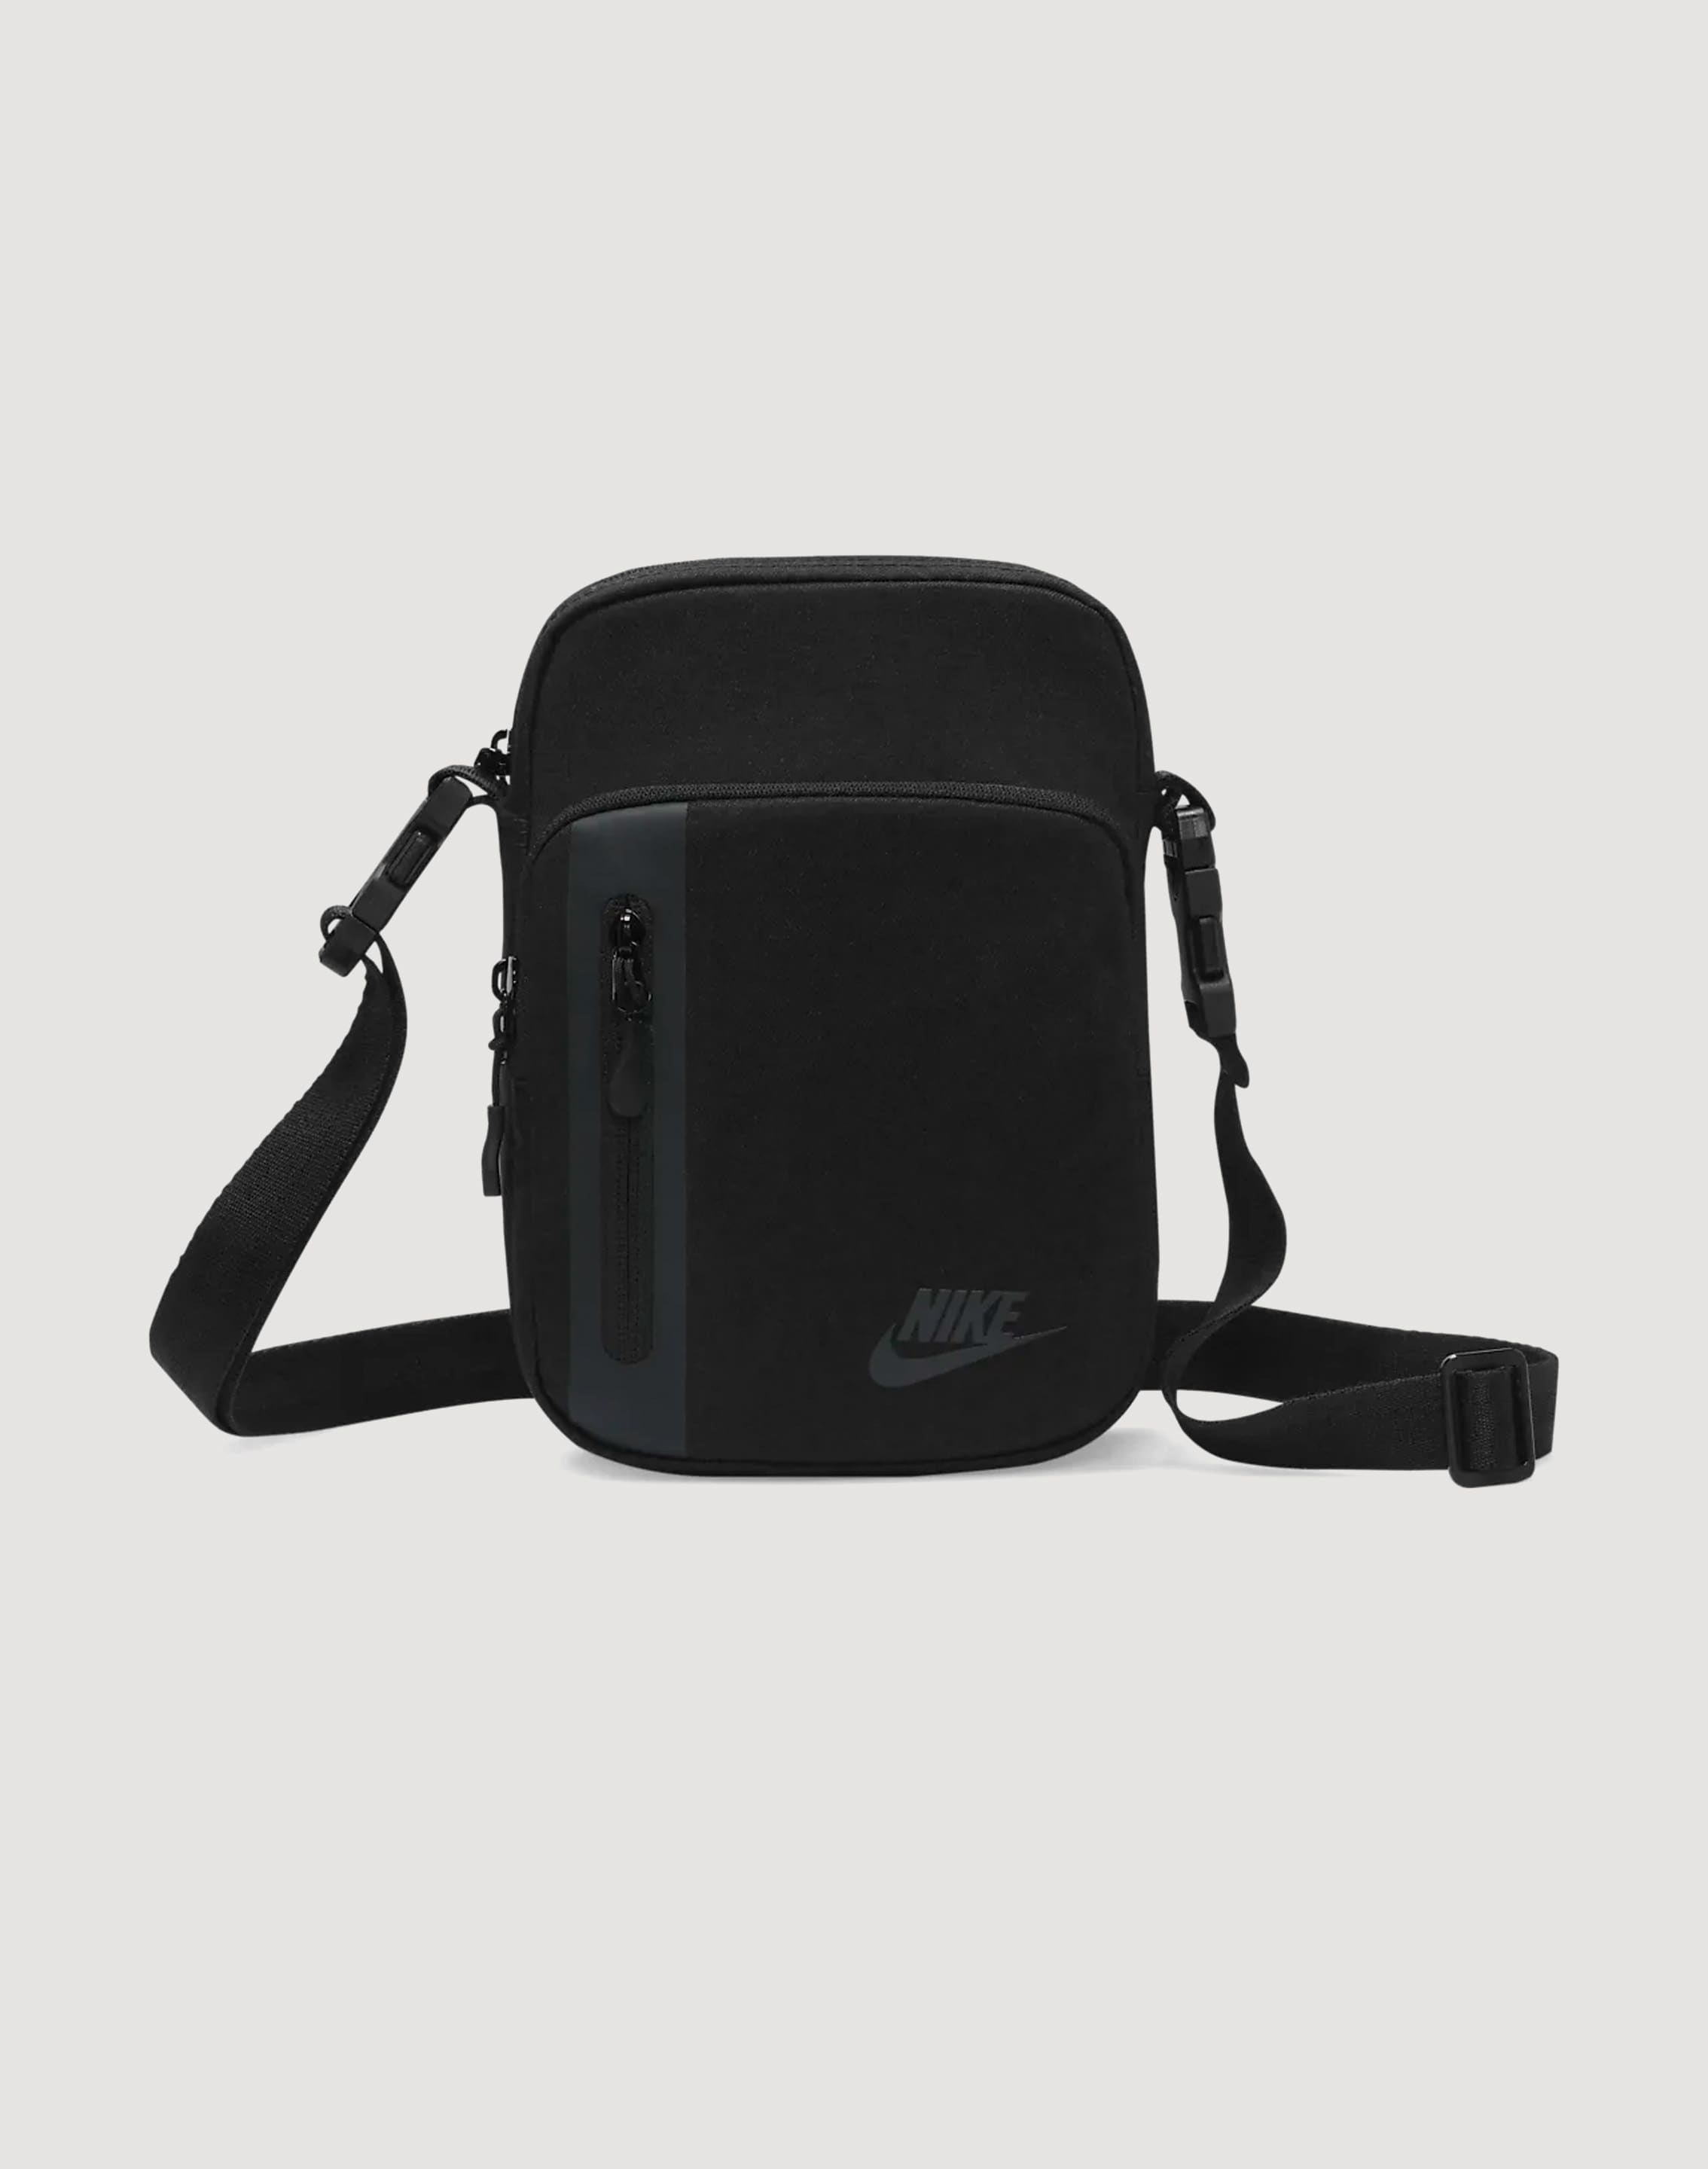 Nike Elemental Bag – DTLR